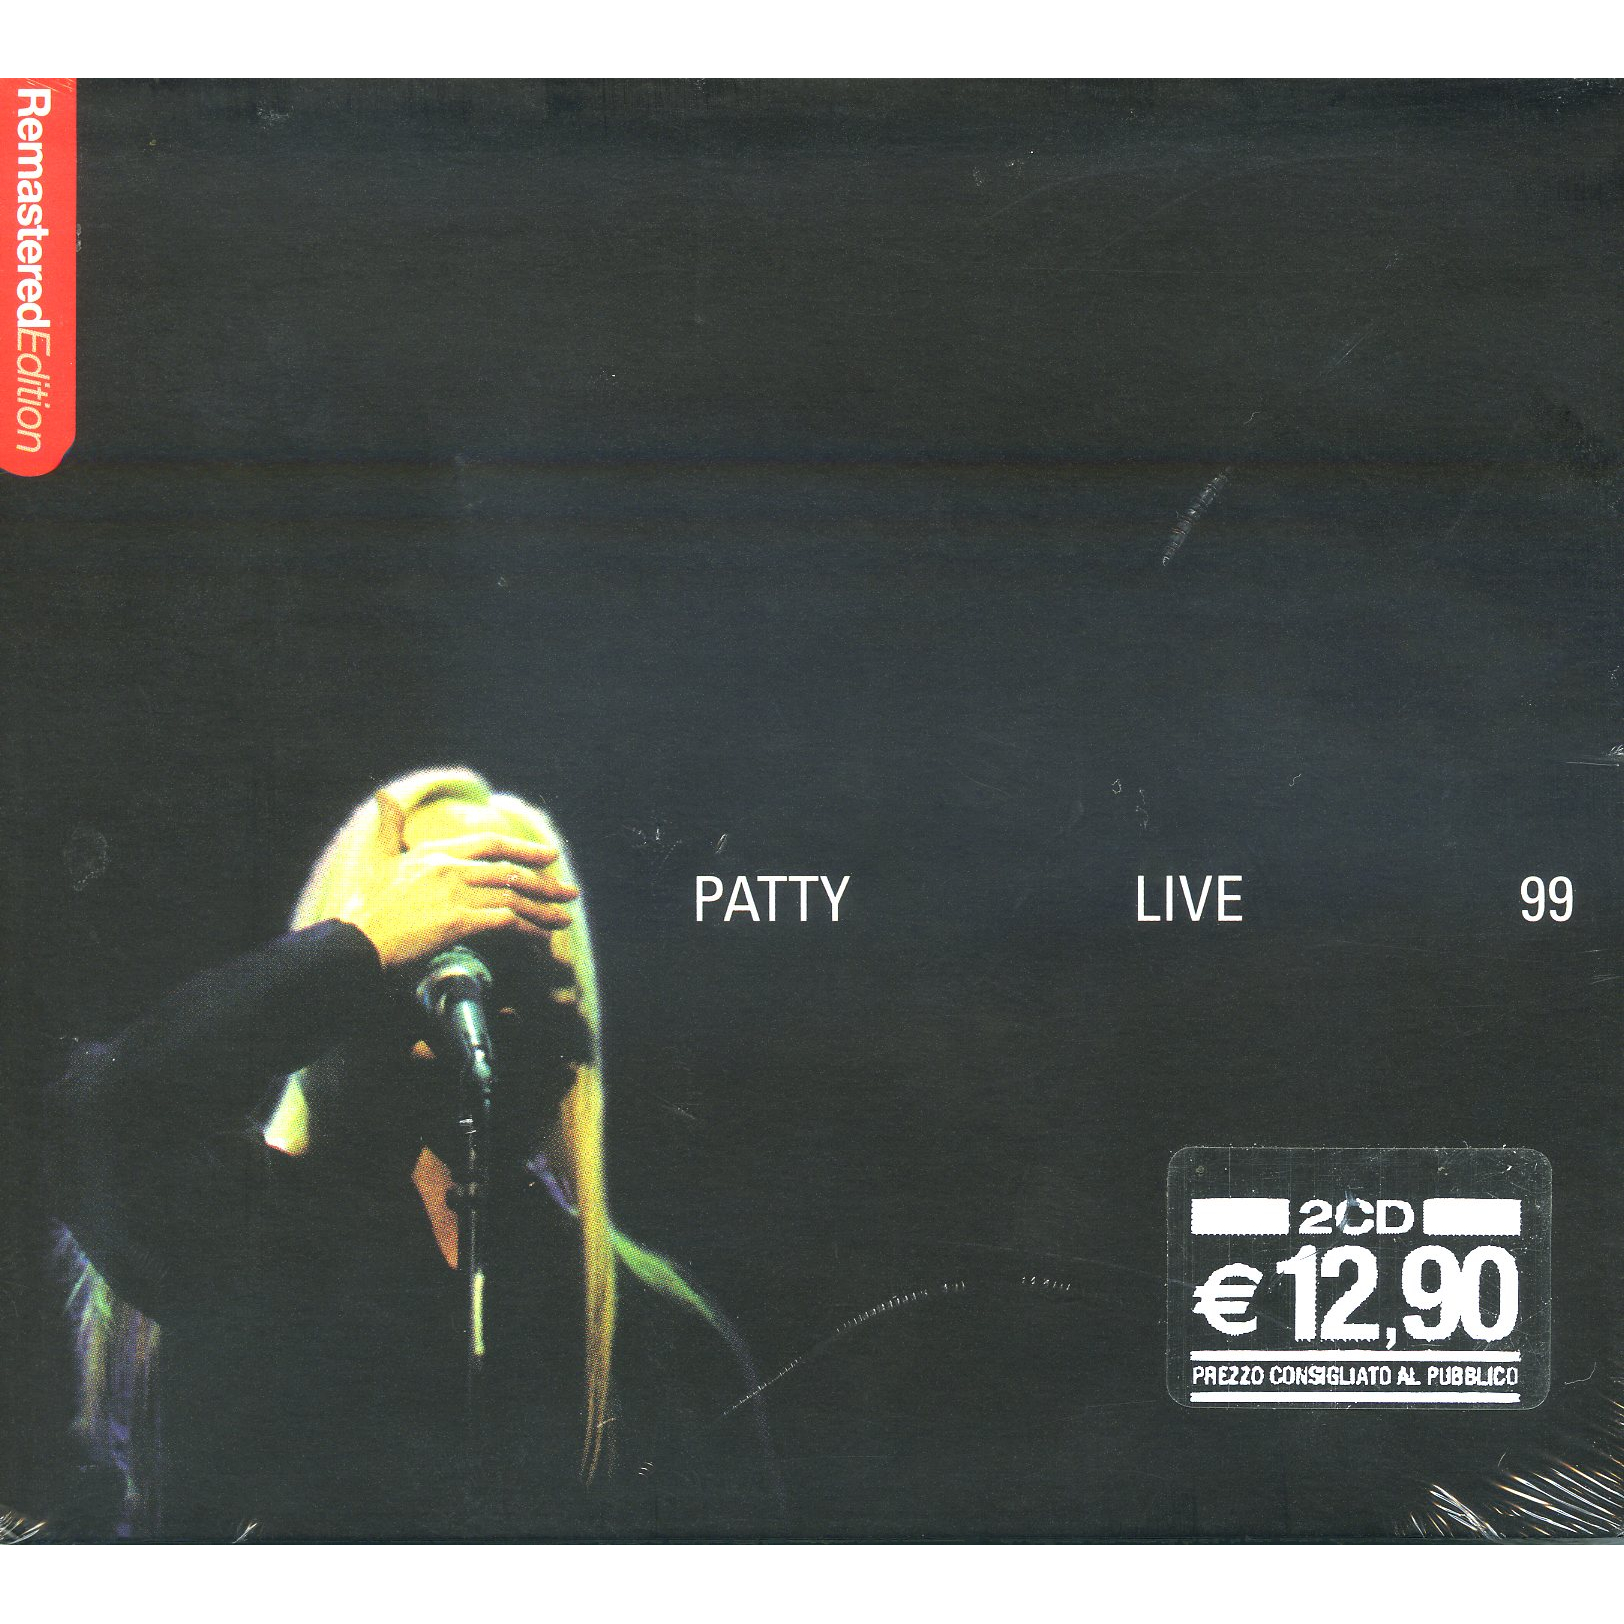 PATTY LIVE 99